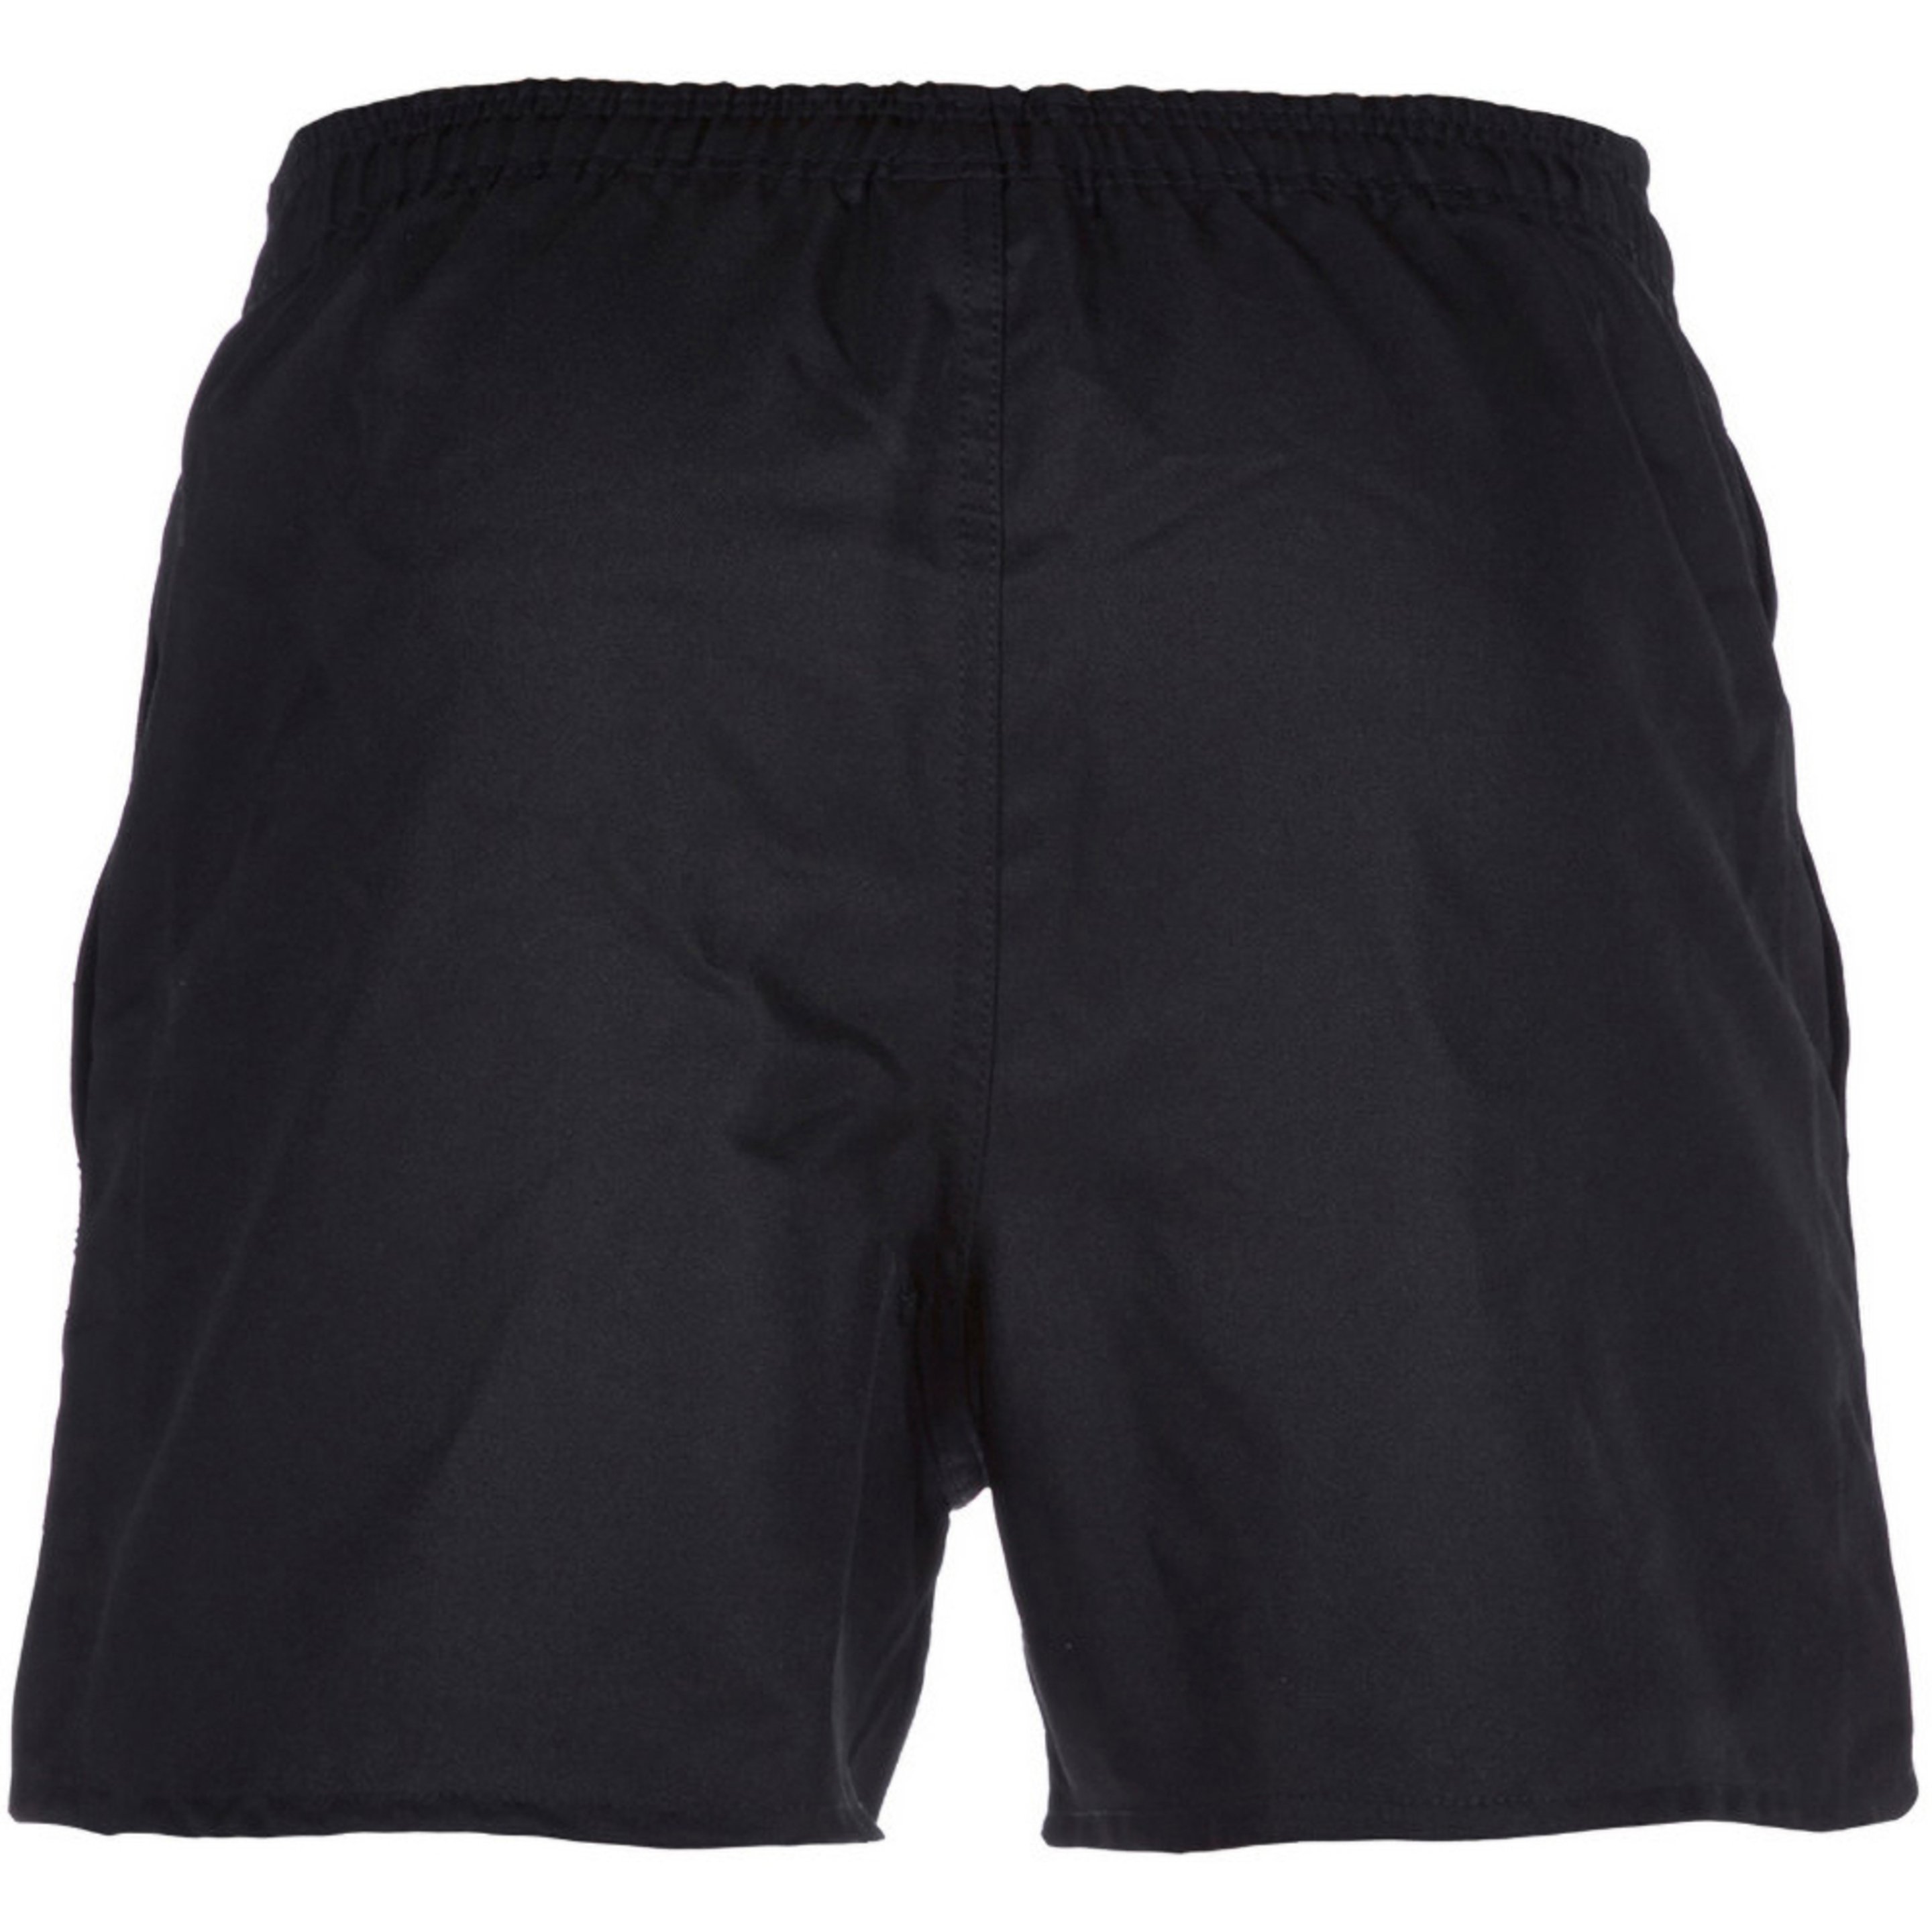 Canterbury - Pantalones Cortos De Deporte Elásticos Modelo Professional - Negro  MKP